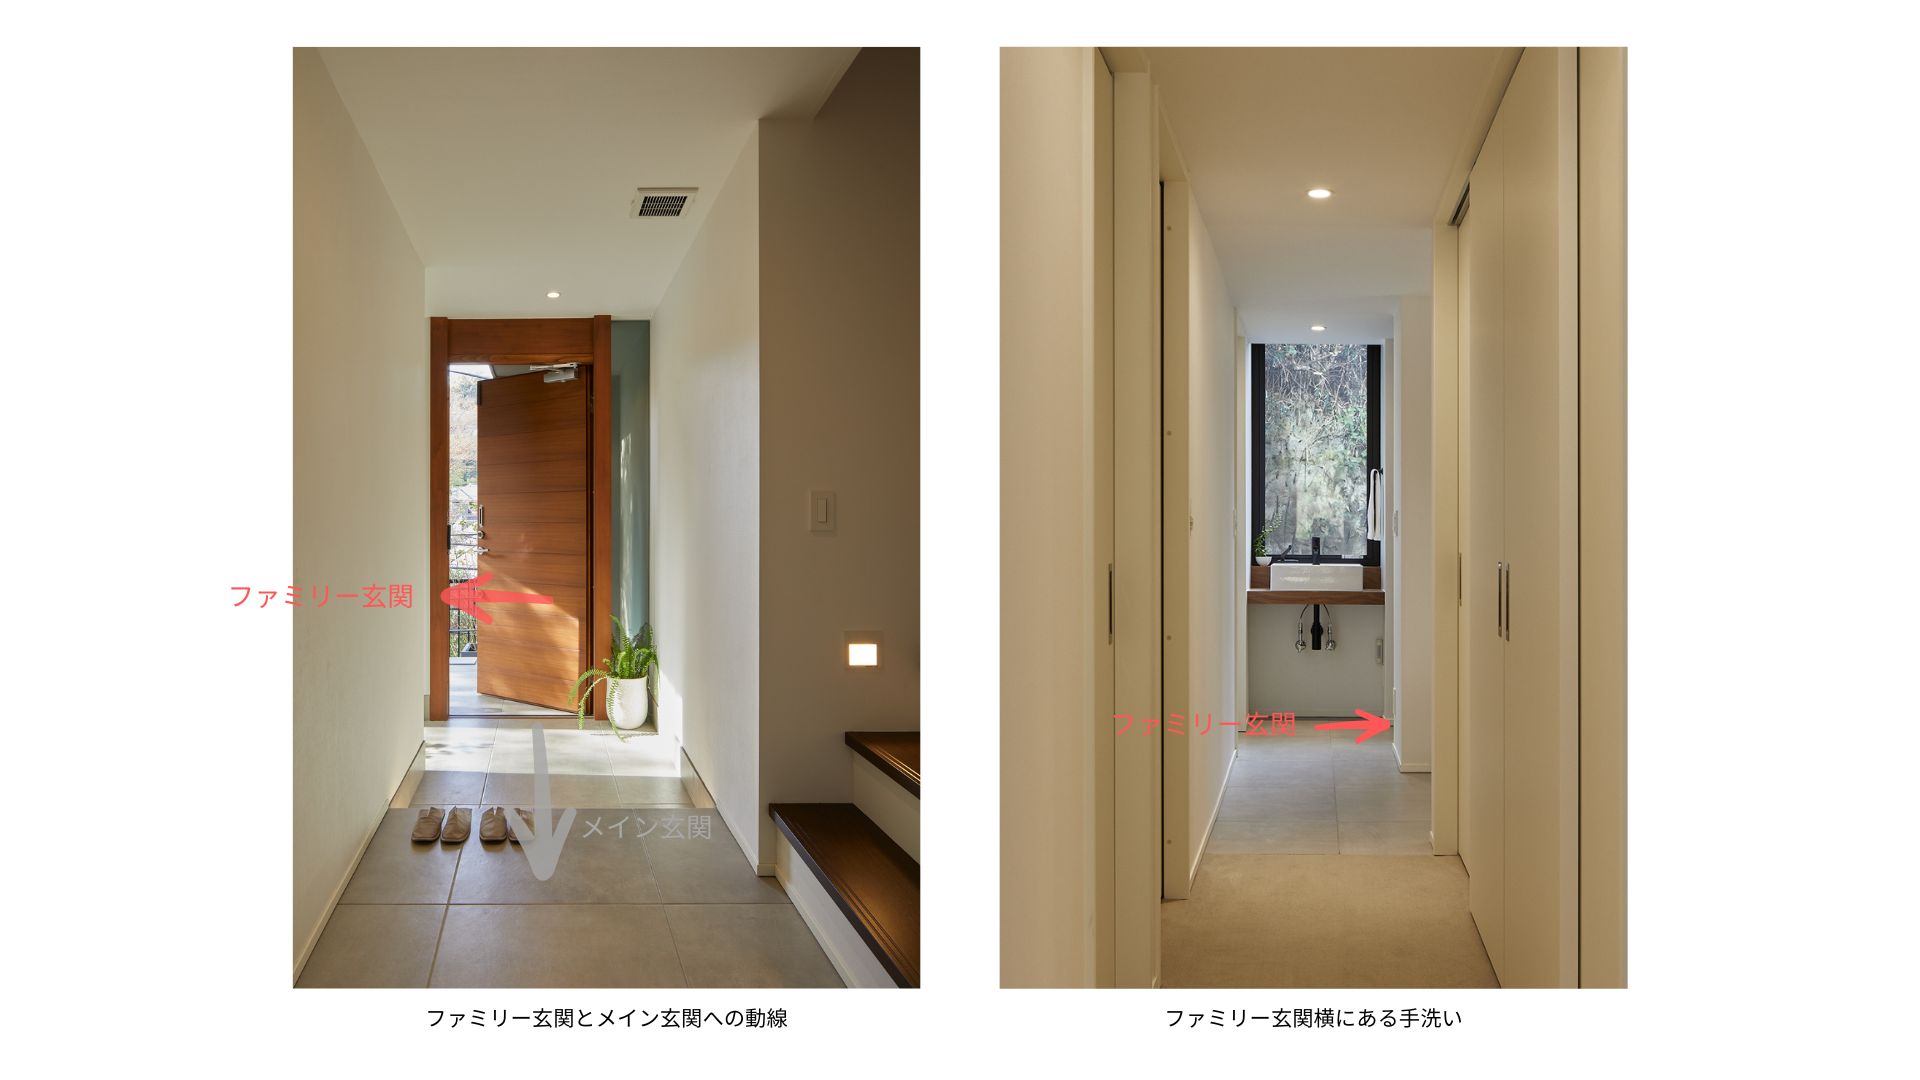 玄関と手洗い-鎌倉の家_utide-blog